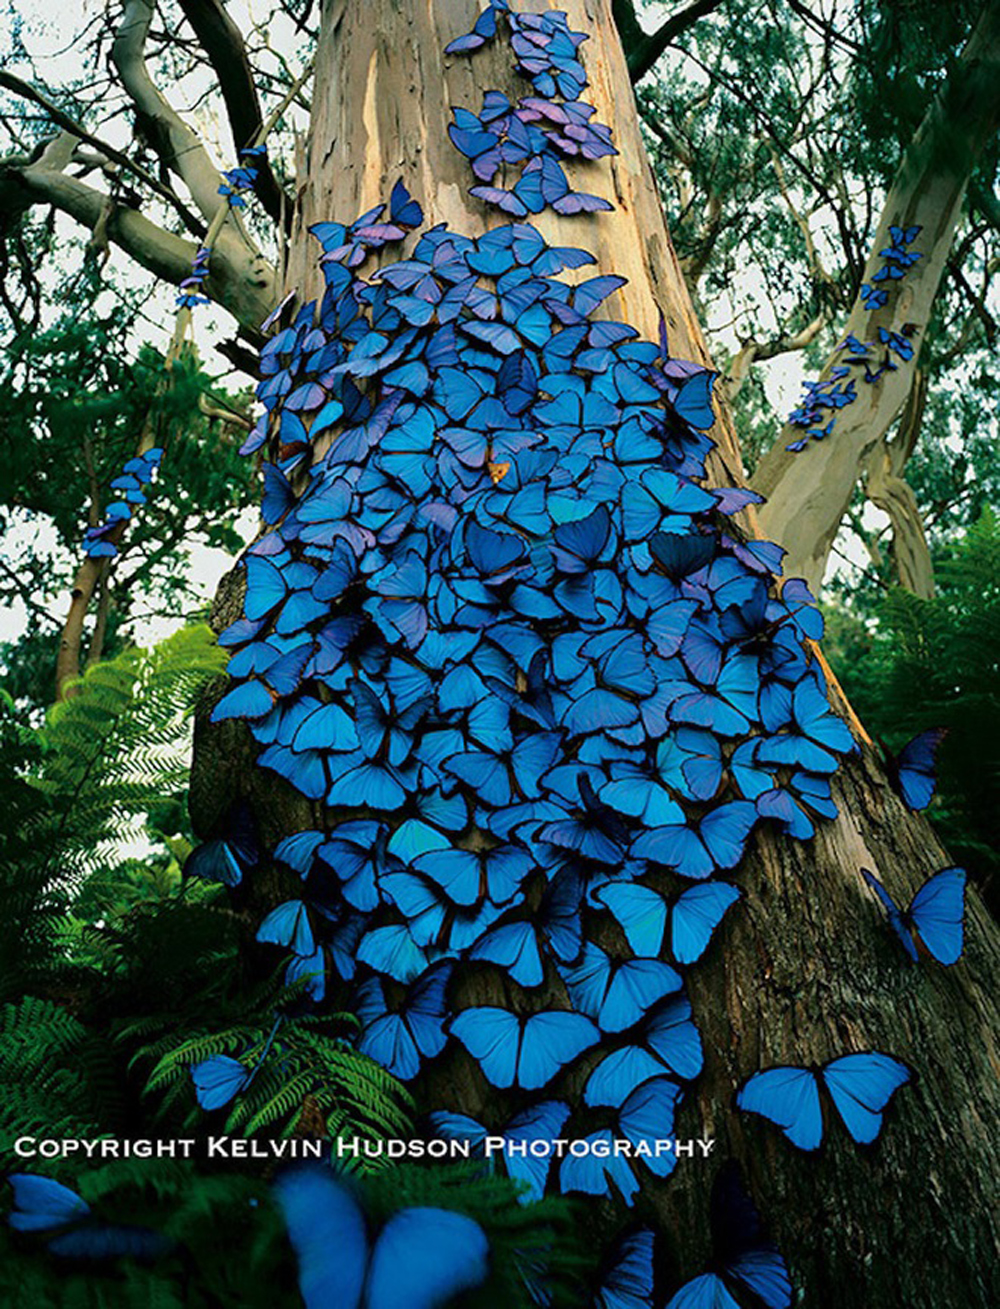 Những bức ảnh về loài bướm xanh to bằng bàn tay, được mệnh danh là loài &quot;sinh vật quyến rũ&quot; - Ảnh 1.